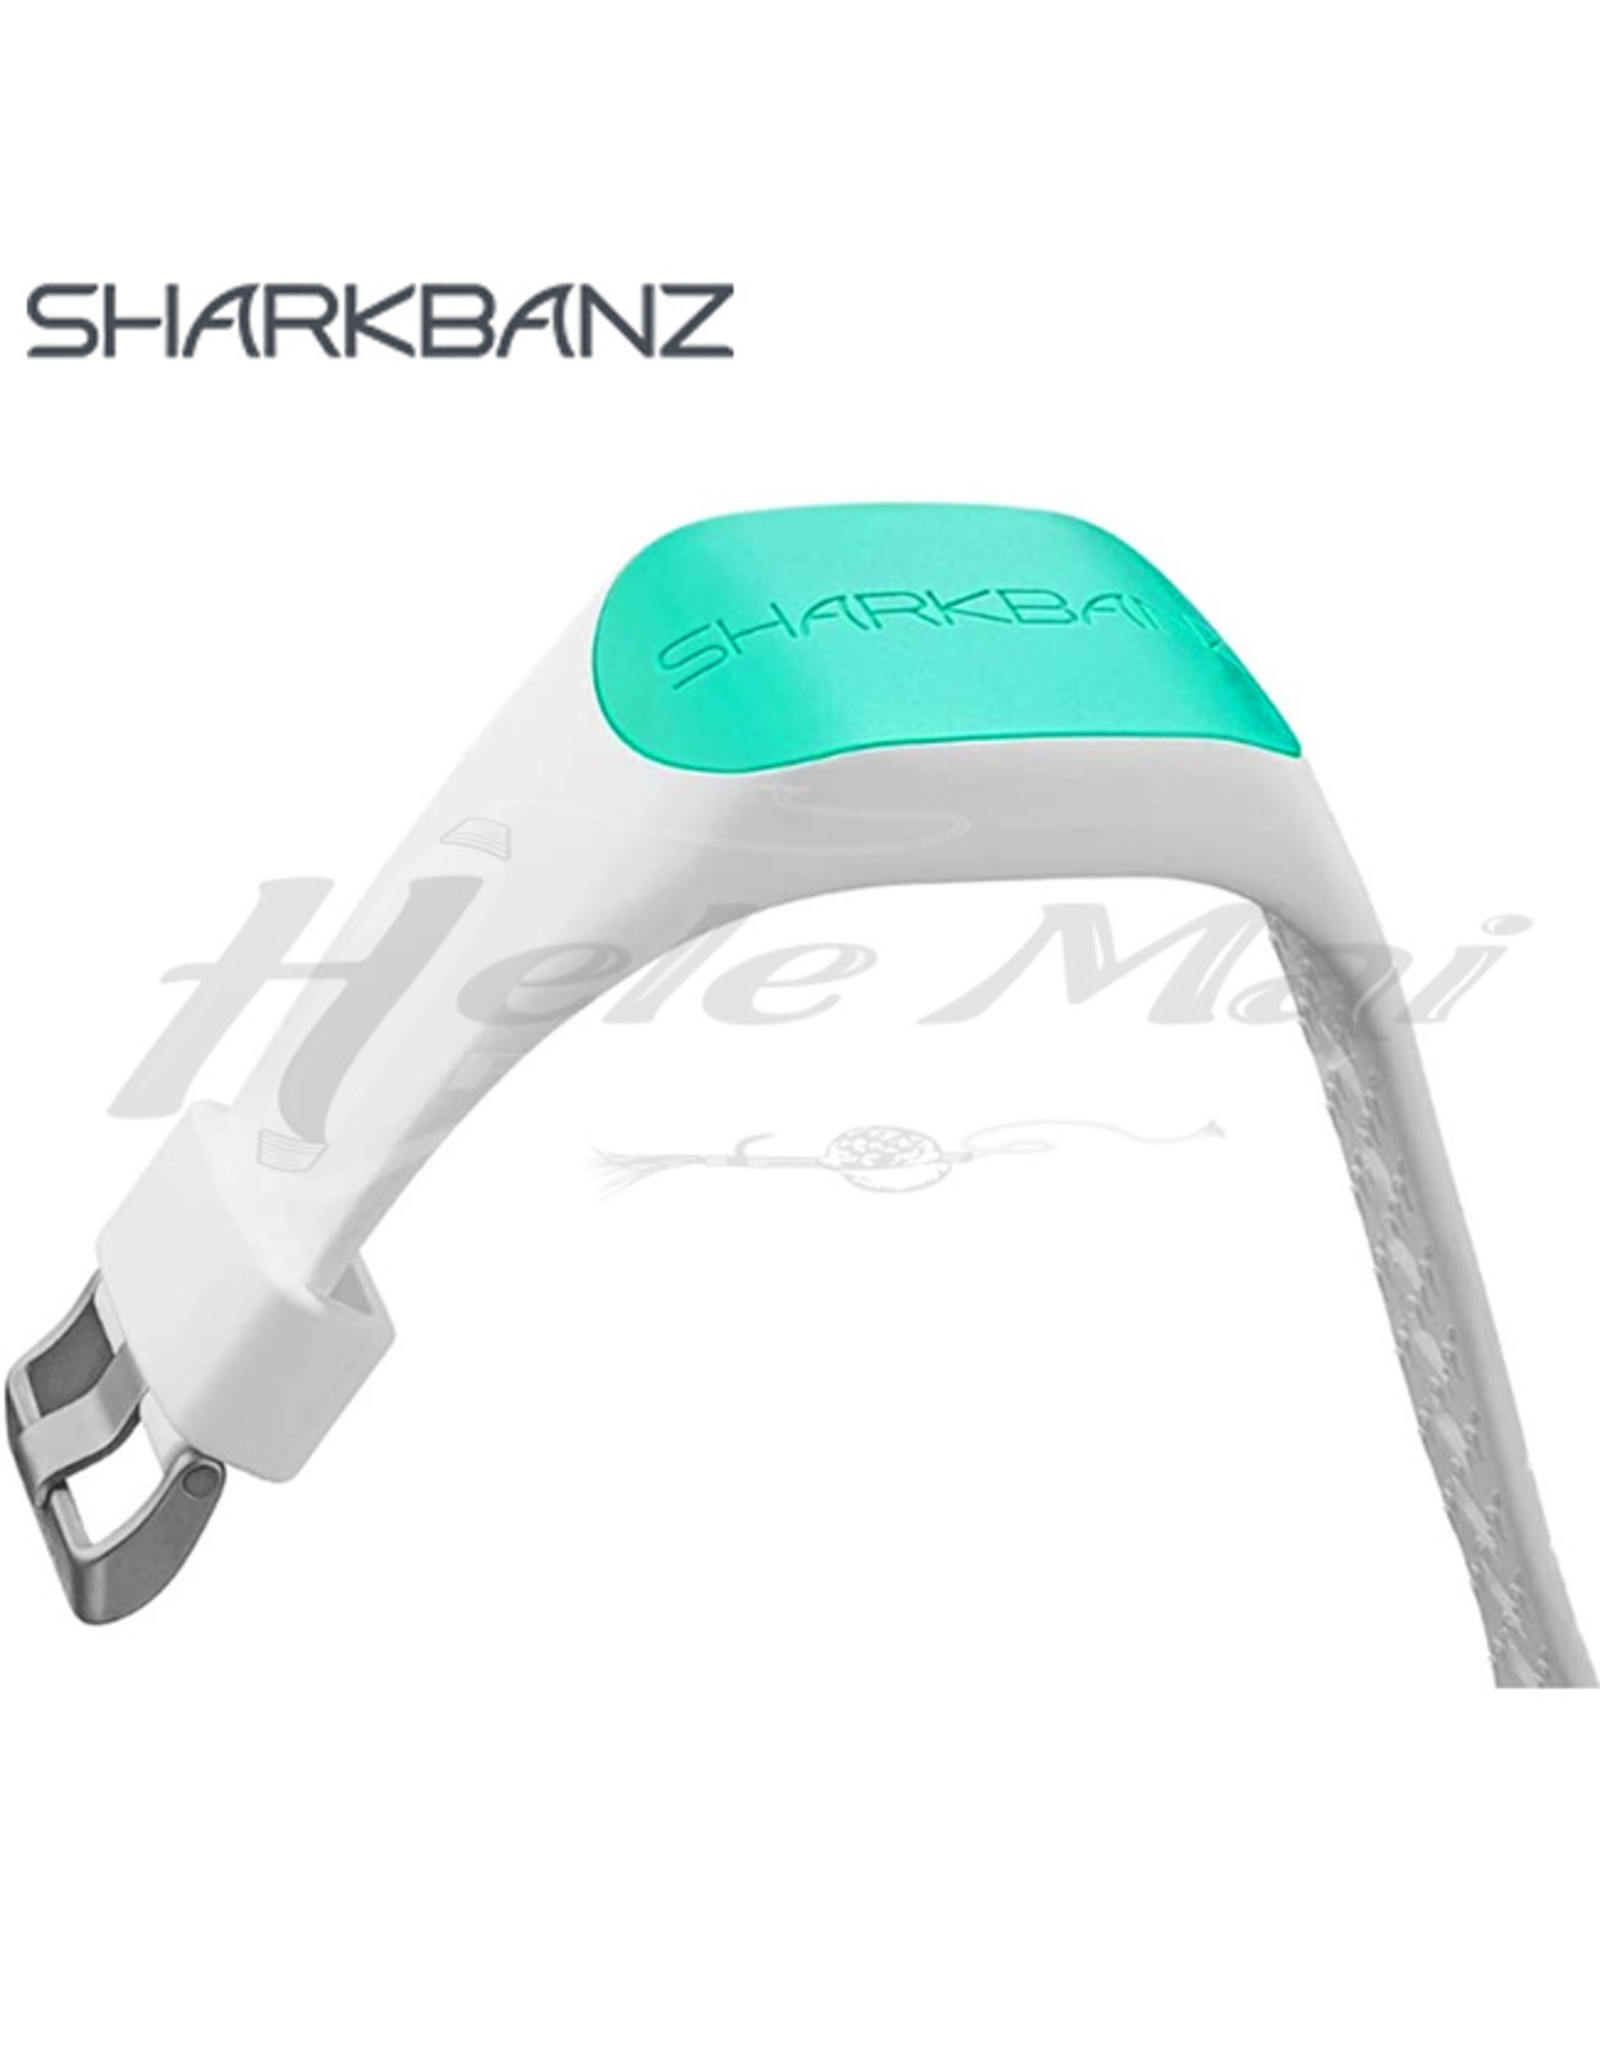 SHARKBANZ (SBZ) SHARKBANZ, ACTIVE SHARK DETERRANT BAND WHITE/SEAFOAM